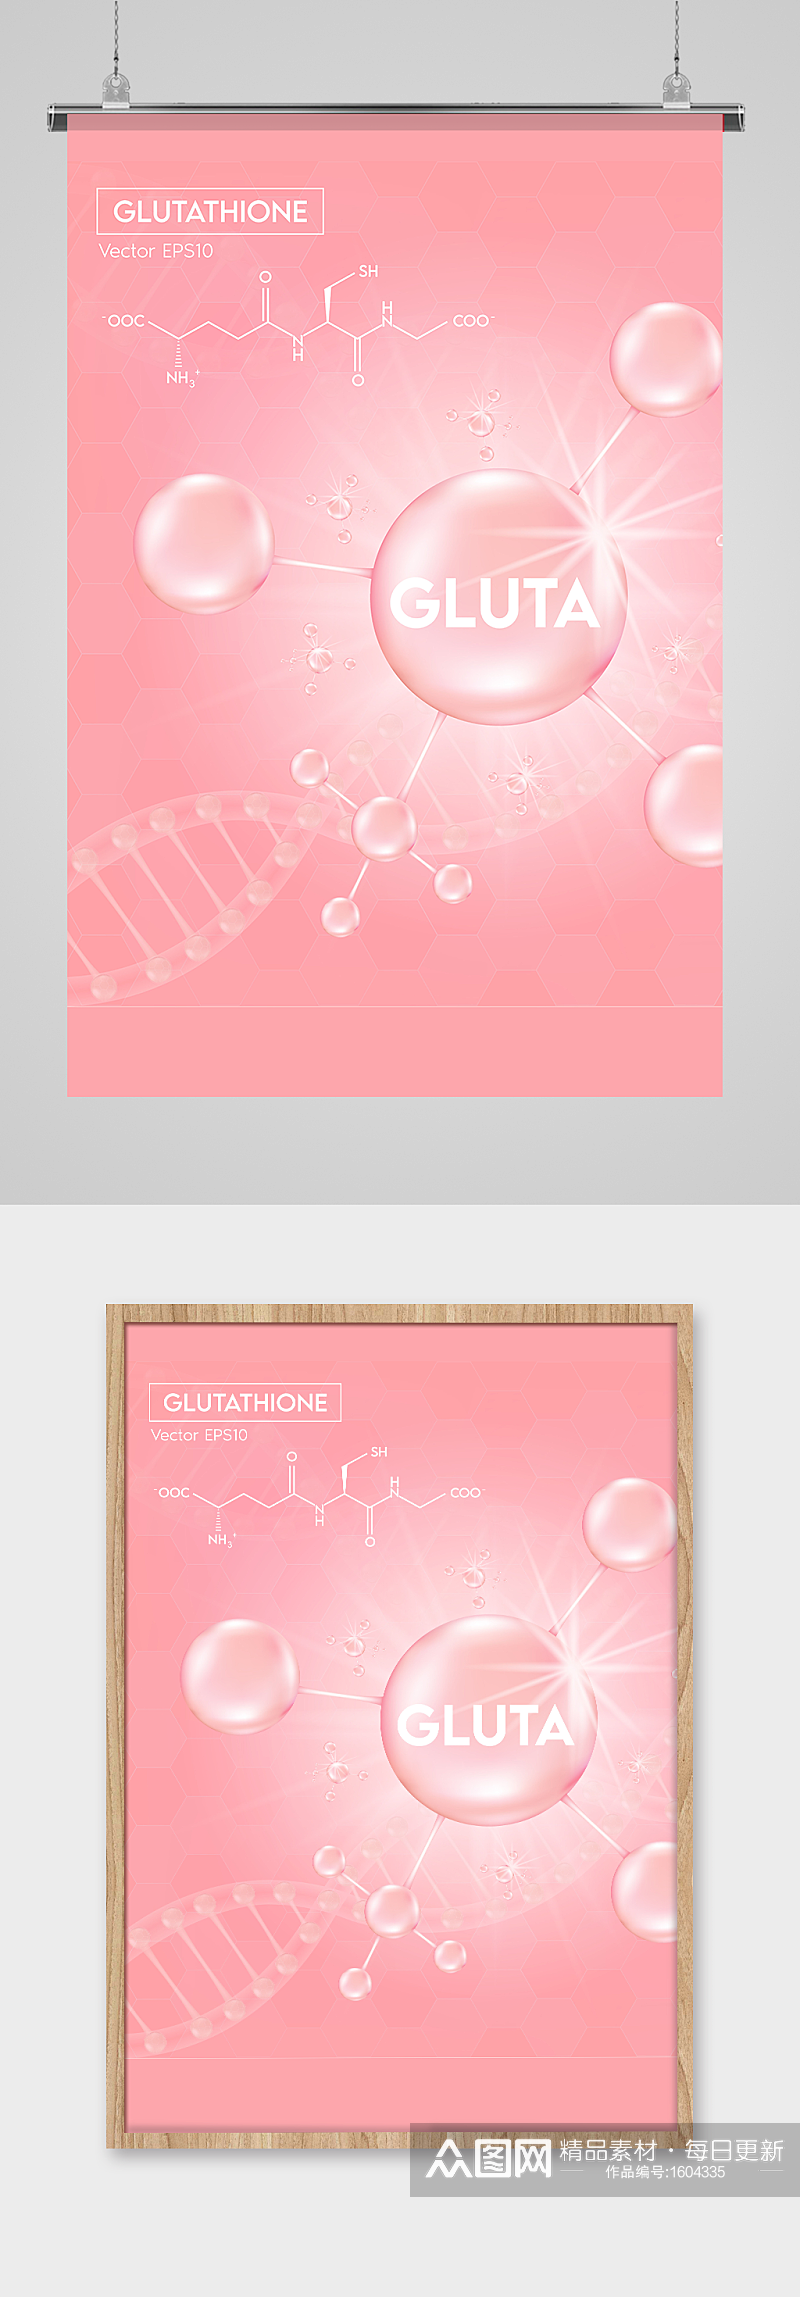 小清新粉红色化妆品科学分子宣传海报设计素材